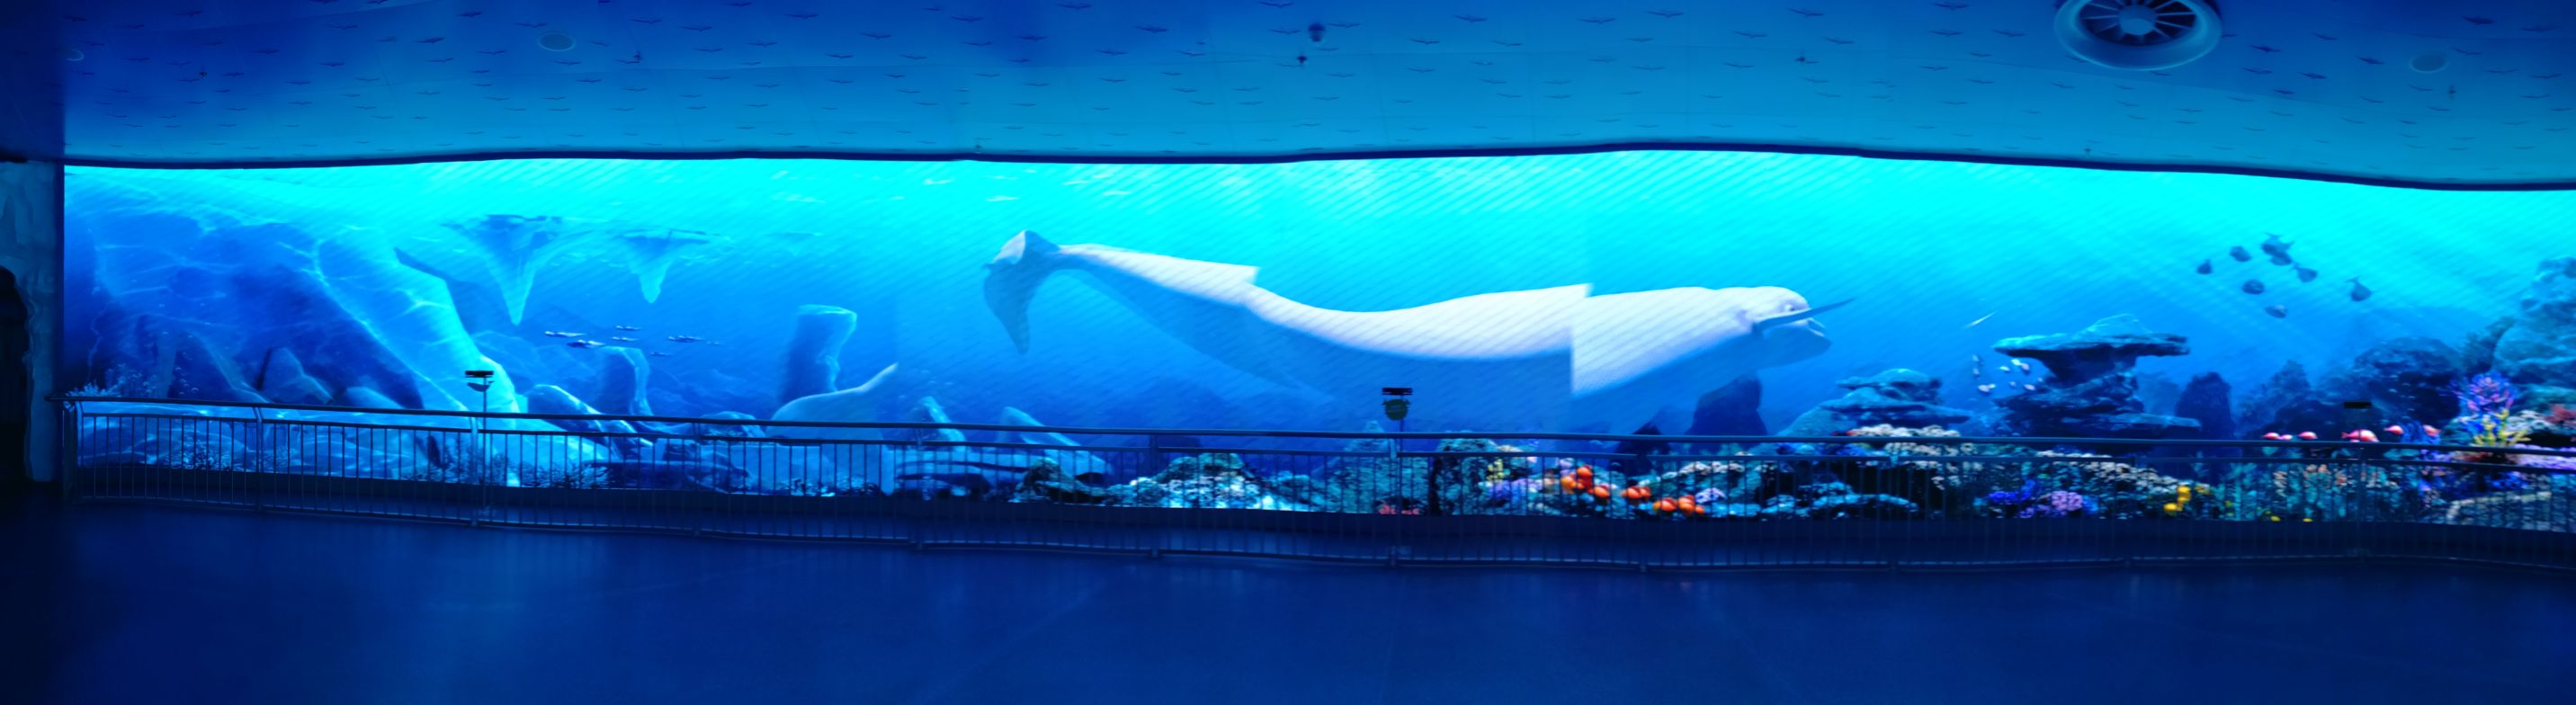 种类没有南京海底世界多,但是环境不错,人也不是很多,大白鲸表演非常